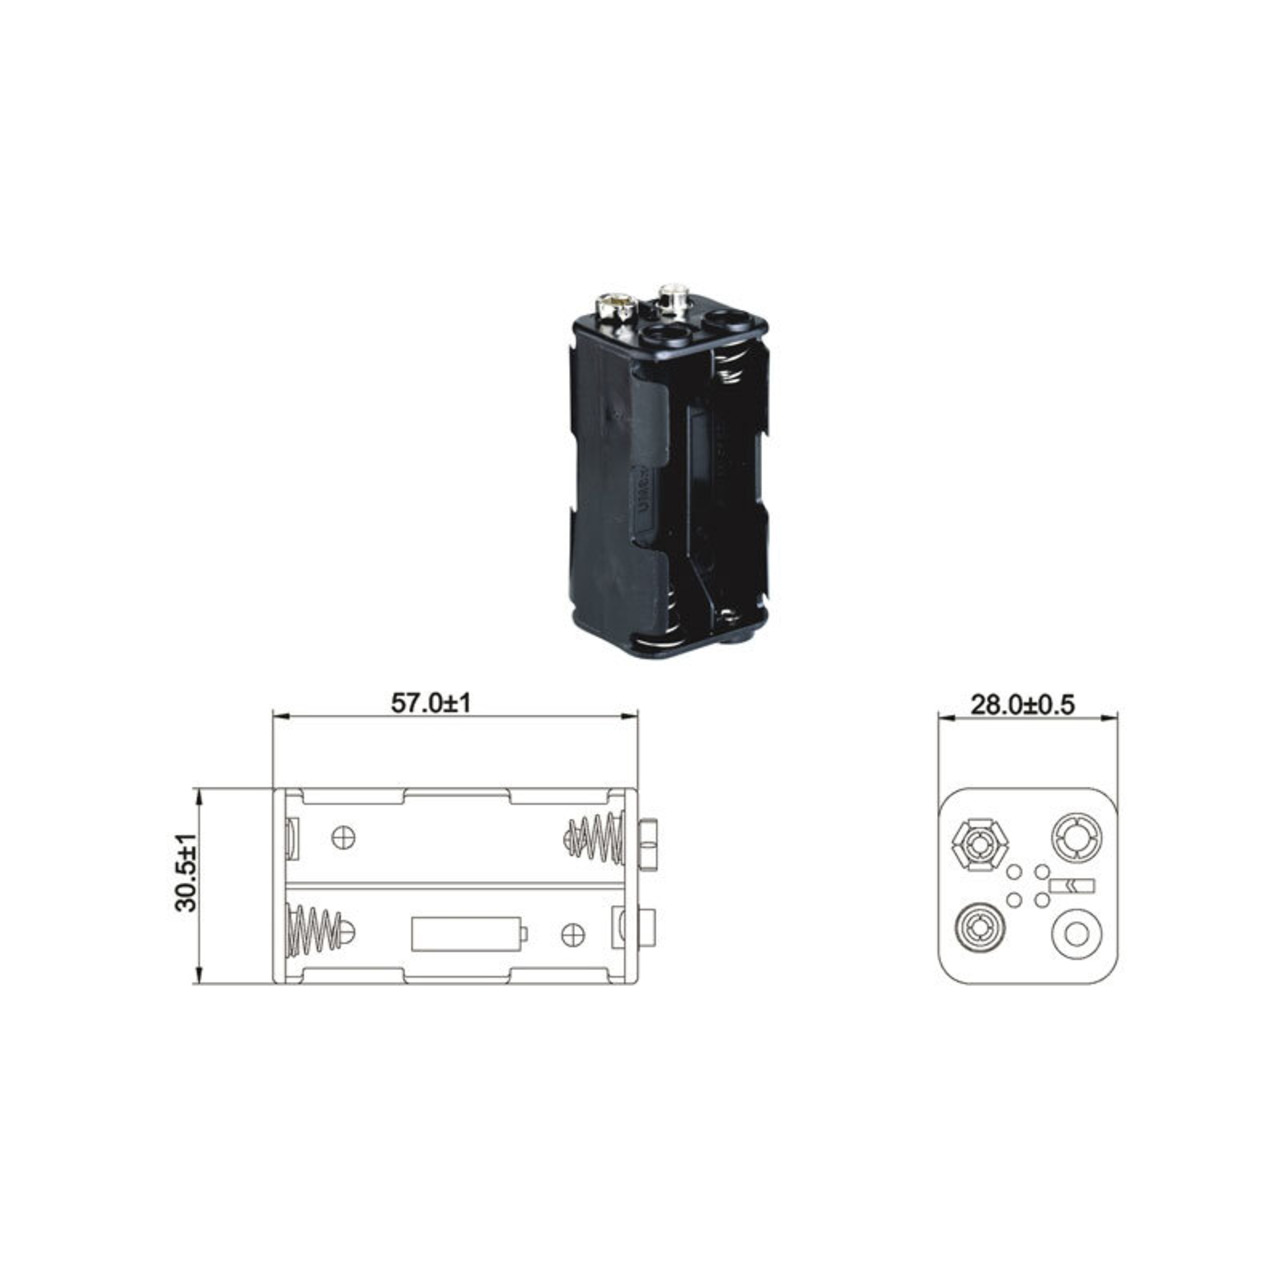 Batteriehalter fr 4 x Mignon Batterie mit Druckknopf-Anschluss unter Stromversorgung